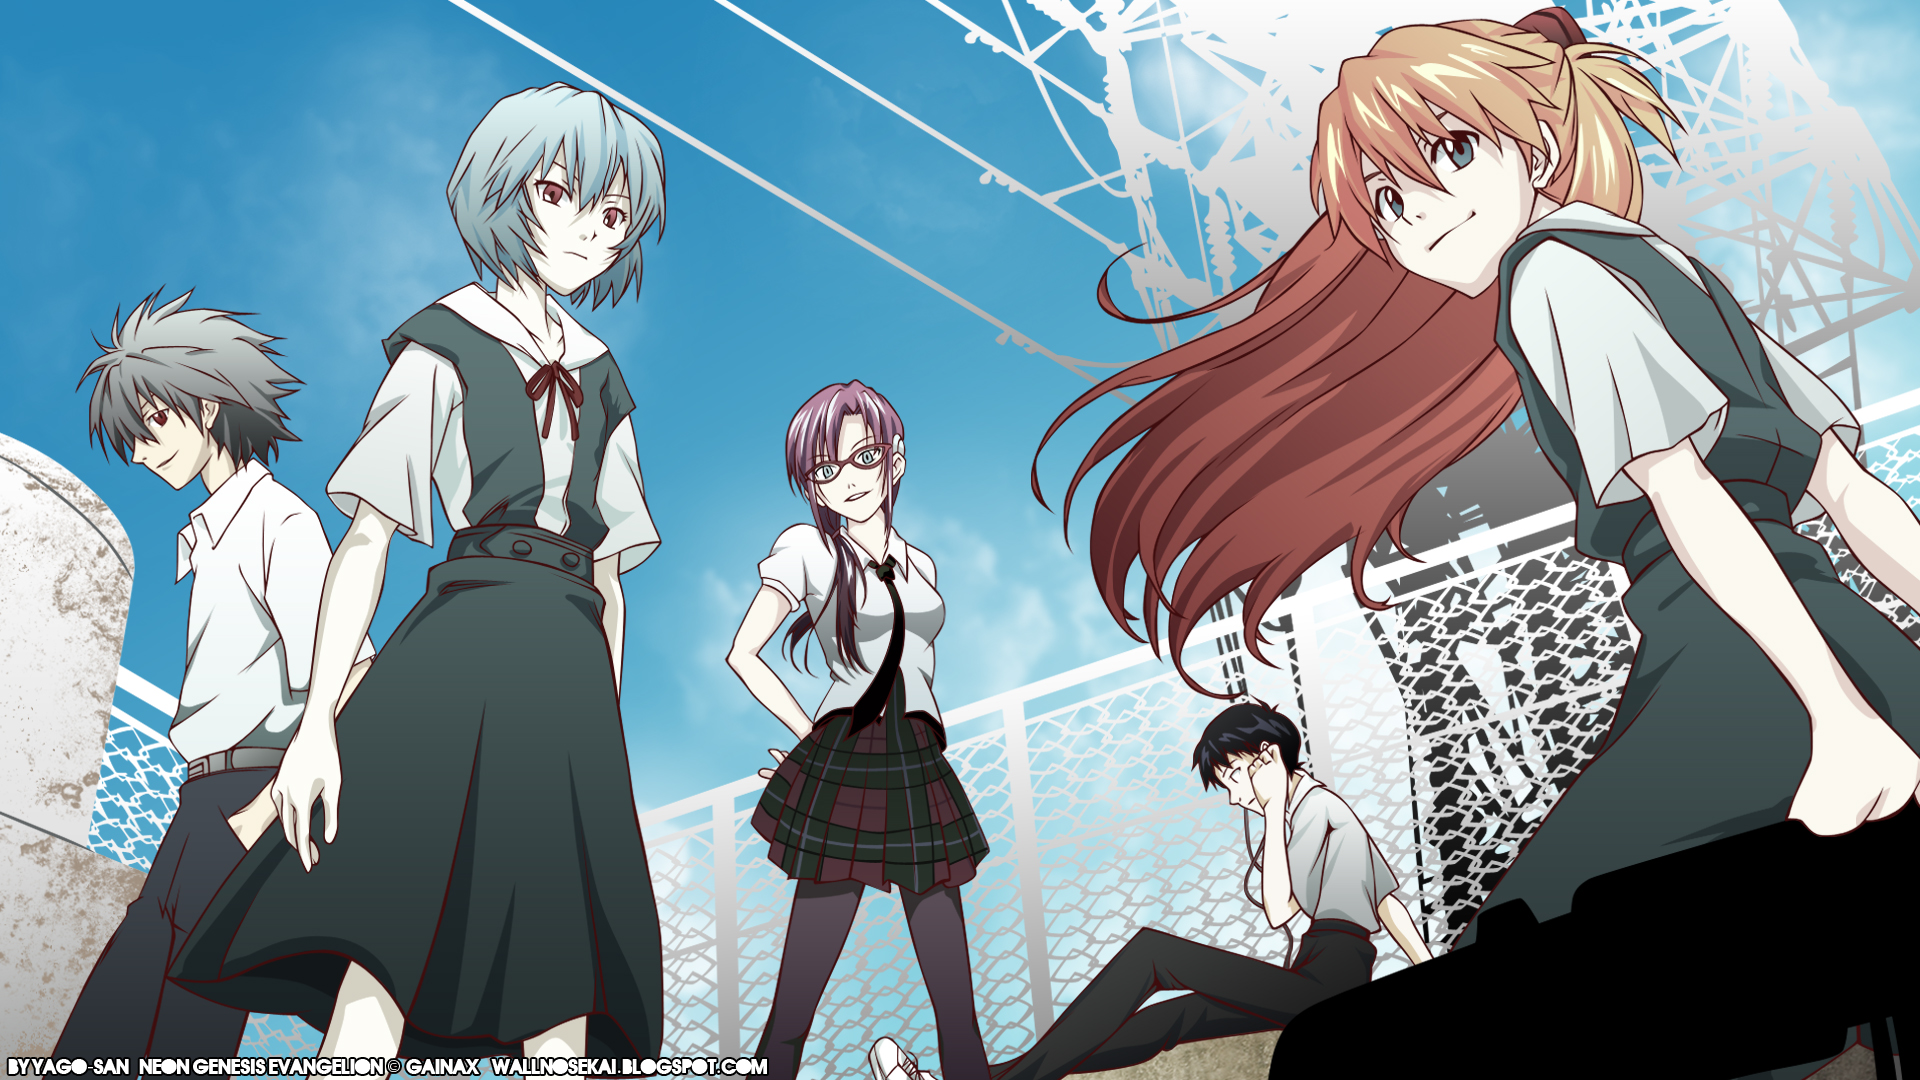 school uniforms, Ayanami Rei, Neon Genesis Evangelion, Ikari Shinji, Kaworu Nagisa, Asuka Langley Soryu - desktop wallpaper